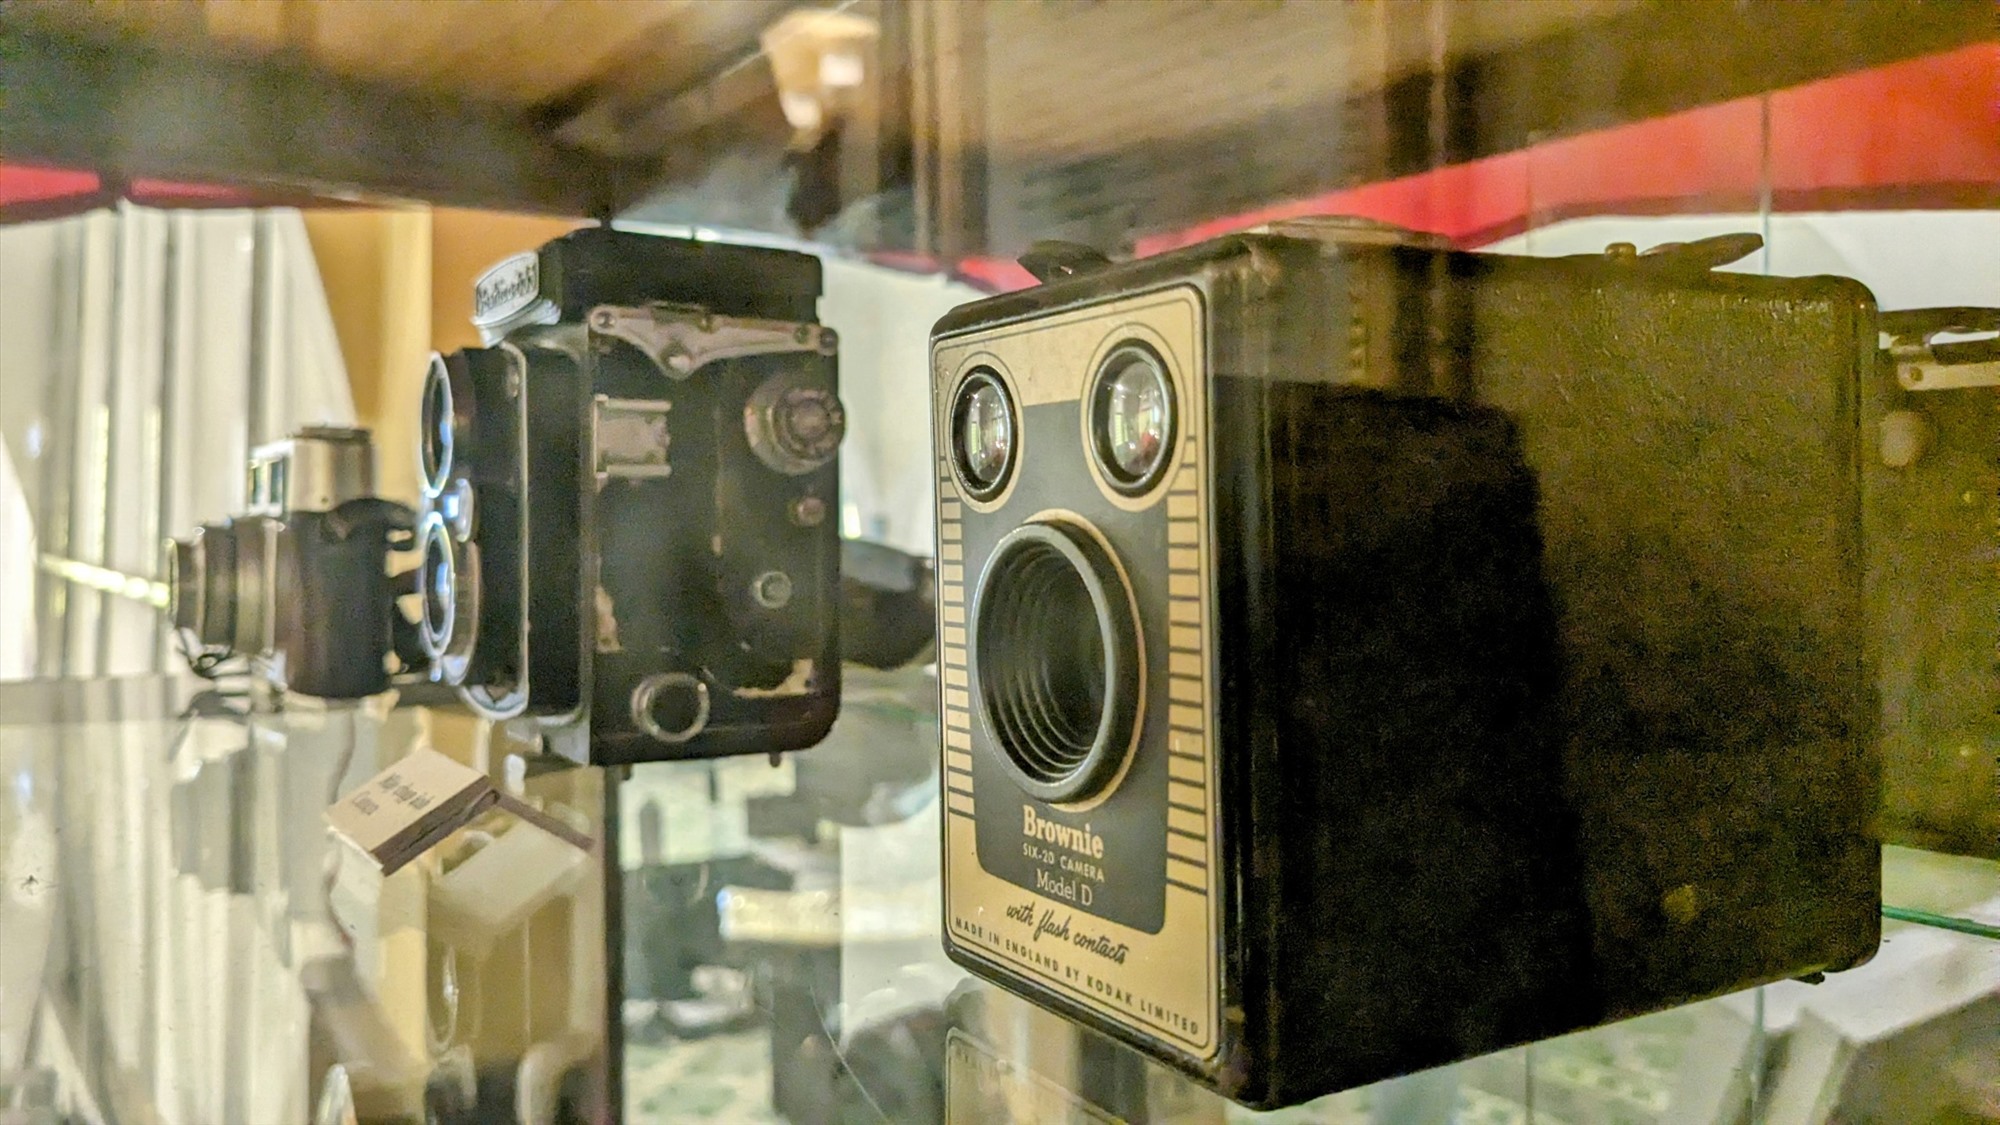 Chiếc máy ảnh kỷ vật của chiến sĩ biệt động Trần Văn Lai.  